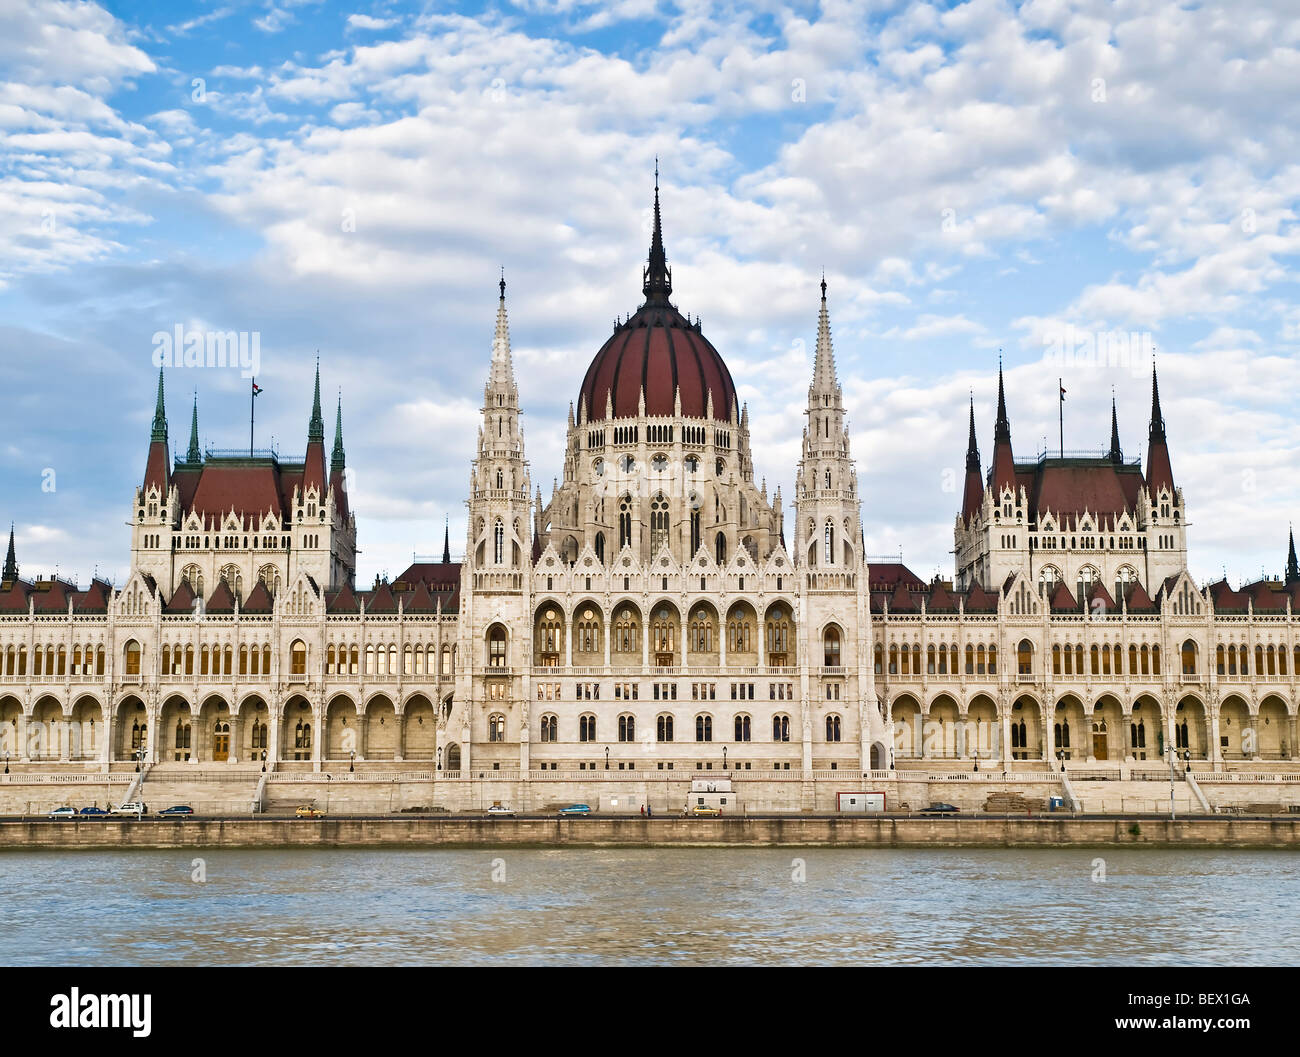 Fachada del Parlamento húngaro, situado en Budapest, visto desde el río Danubio Foto de stock